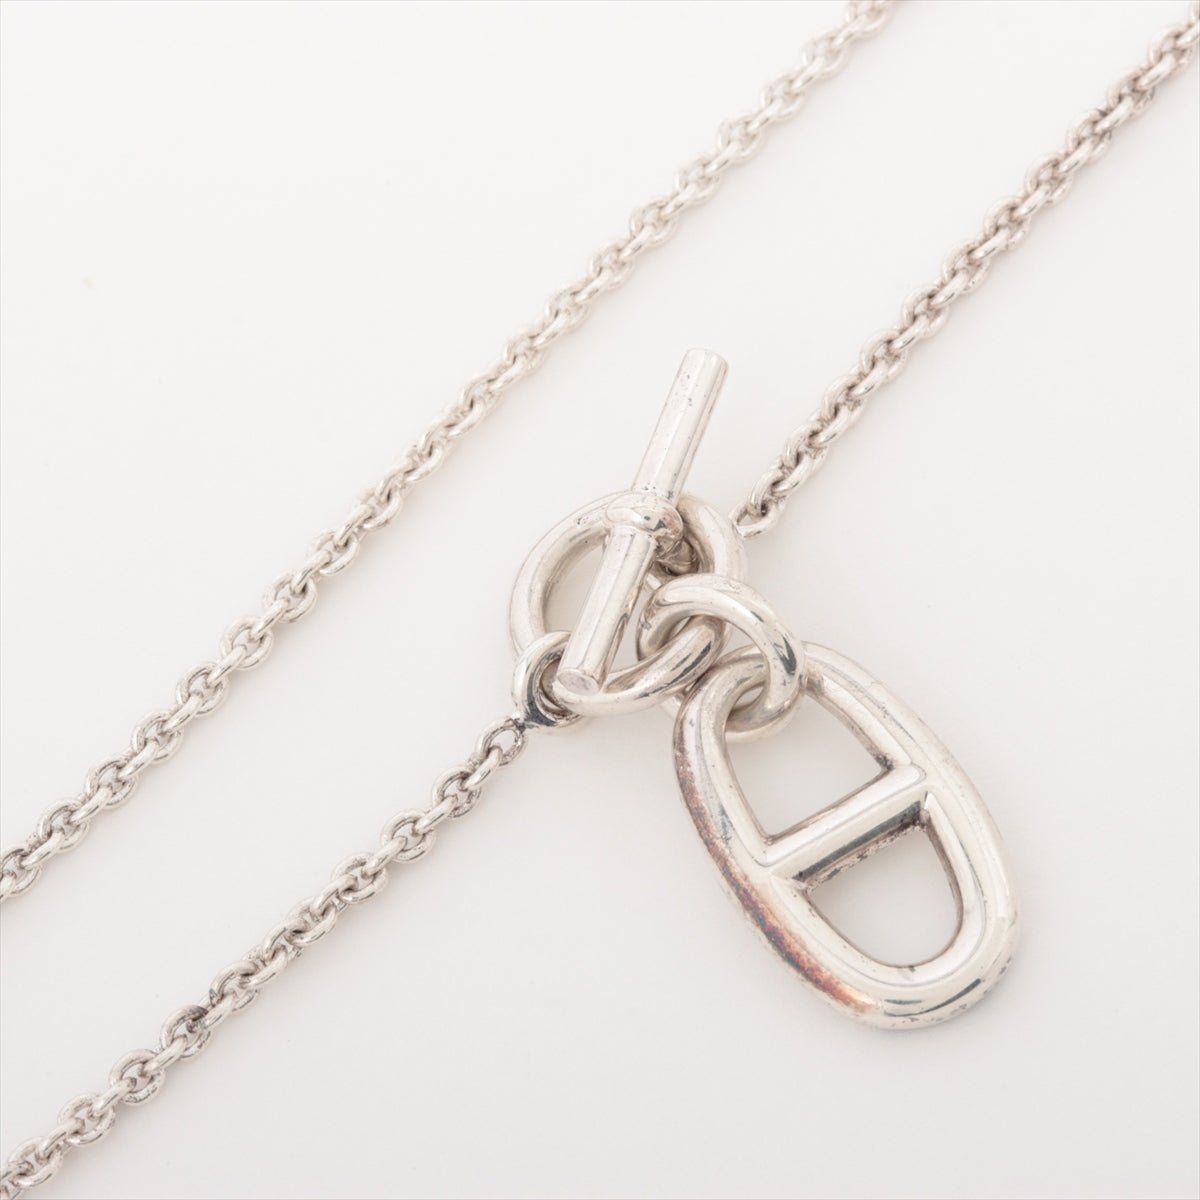 Hermès Chaîne d'Ancre Amulet Necklace 925 9.6g Silver